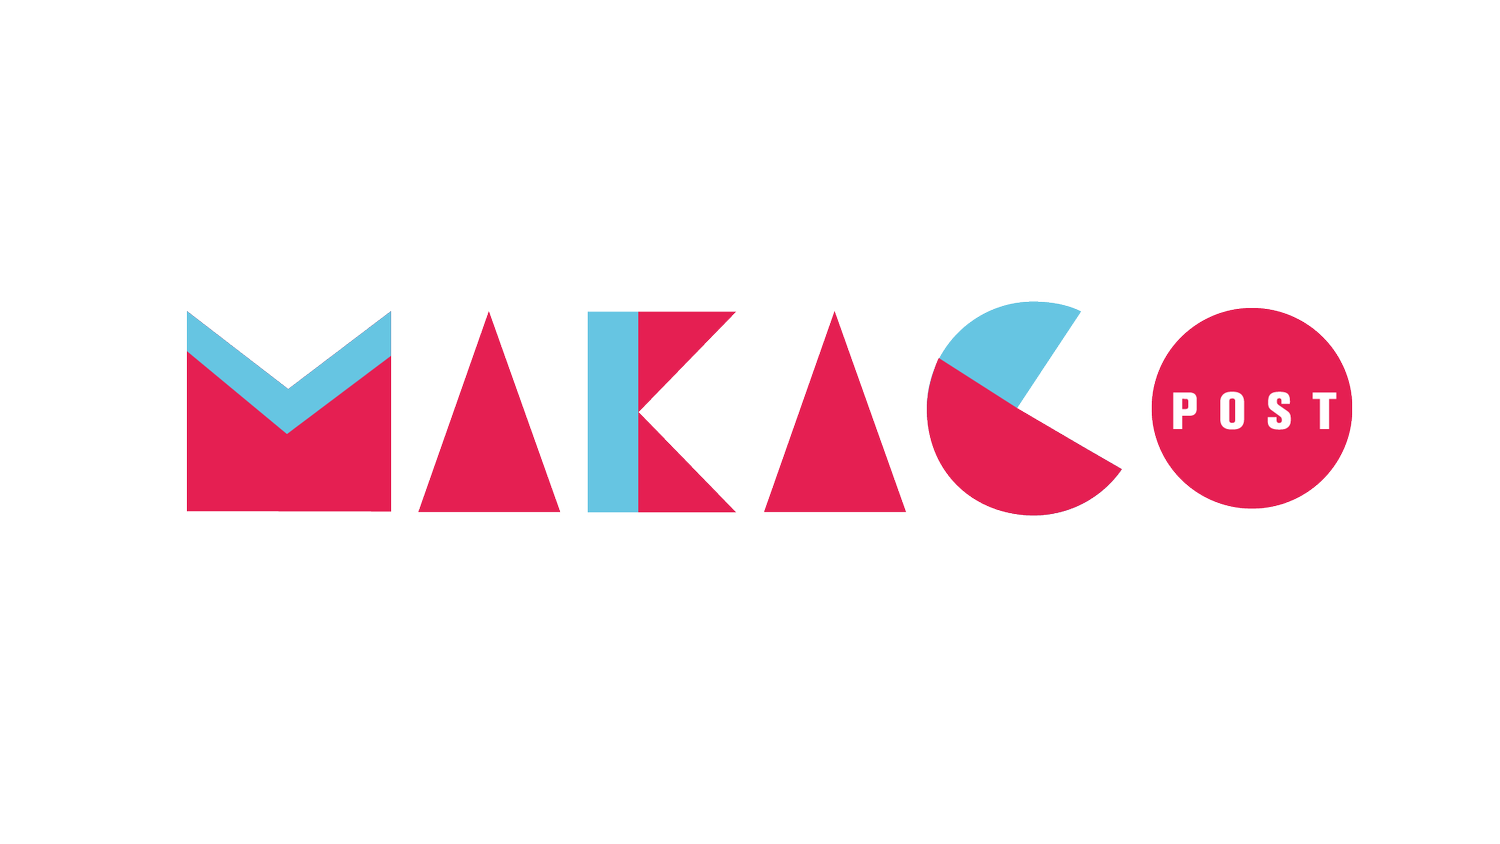 MAKACO